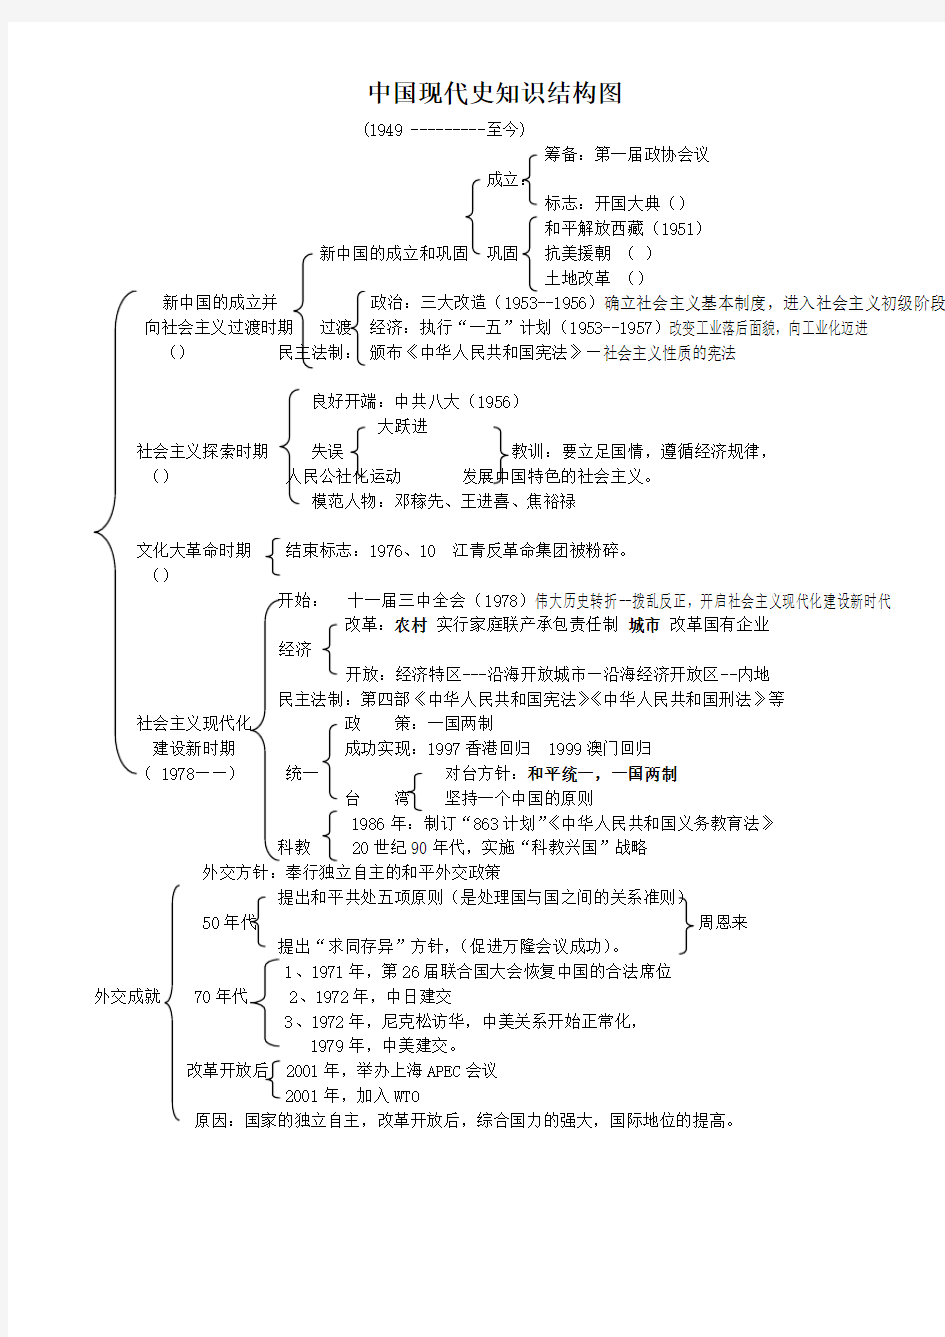 中国现代史知识结构图